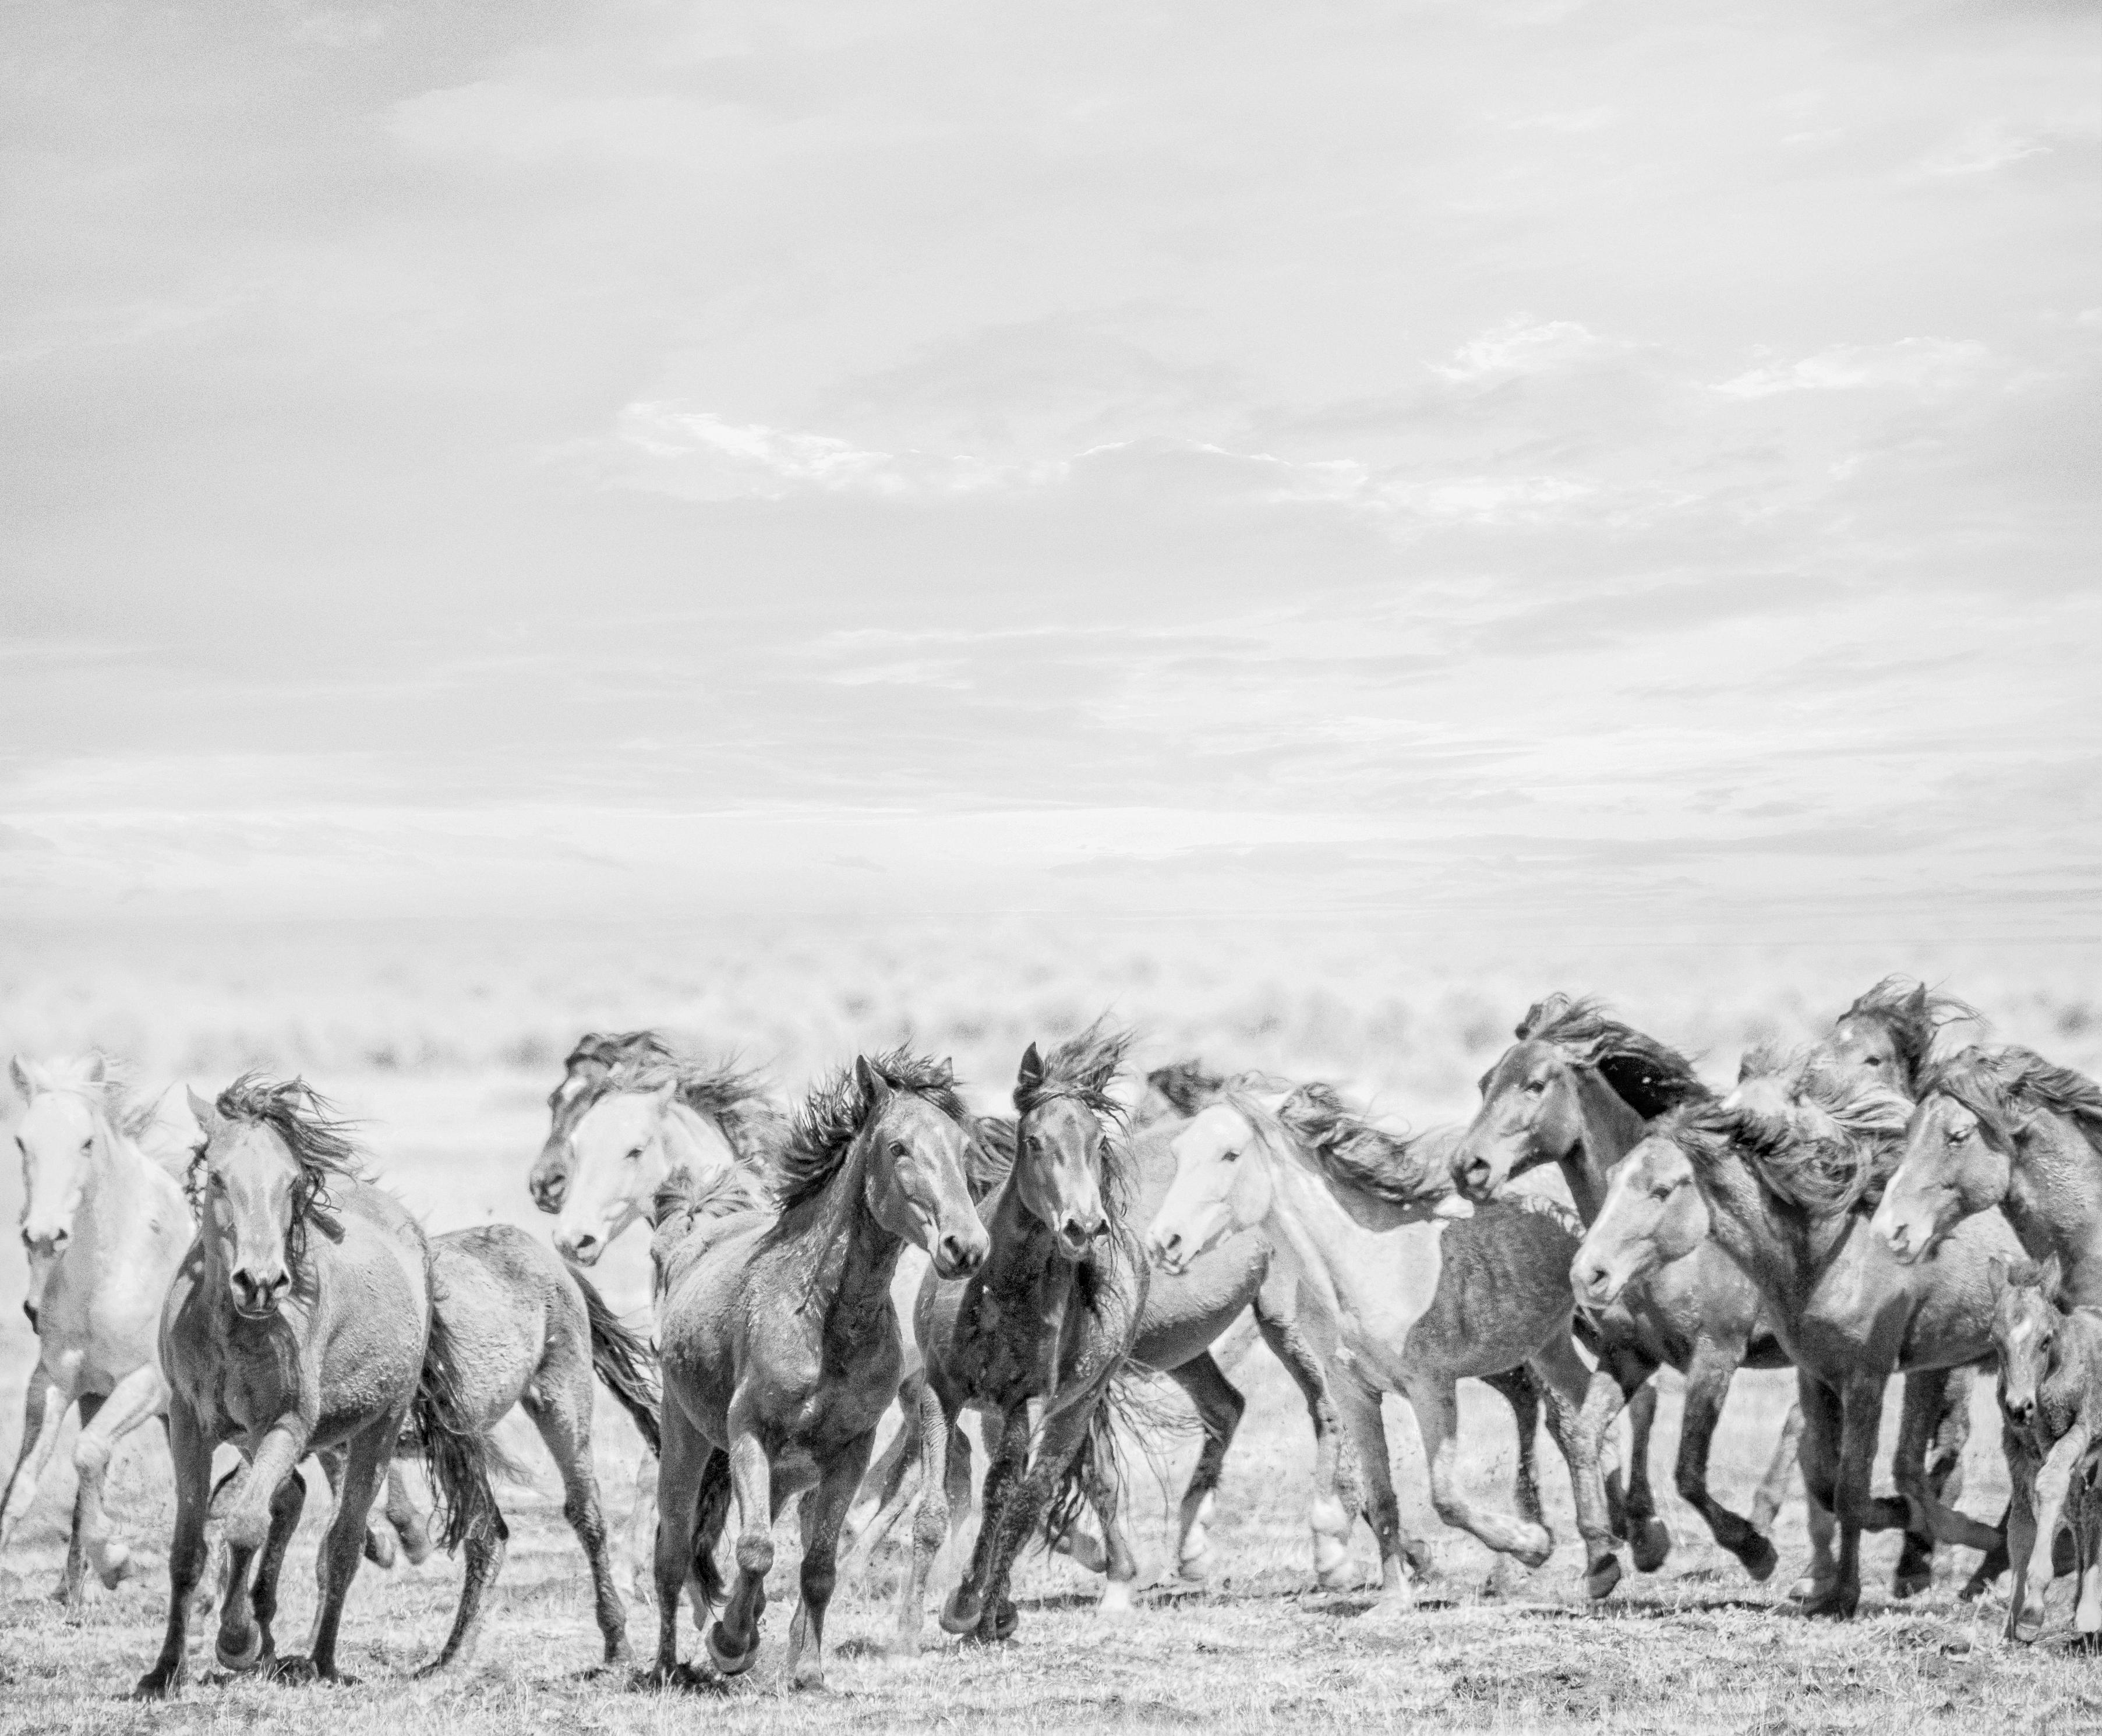 Shane Russeck Black and White Photograph – "Go West"  36x48 – B&W-Fotografie von Wildpferden – (Special 1stdibs Preis)